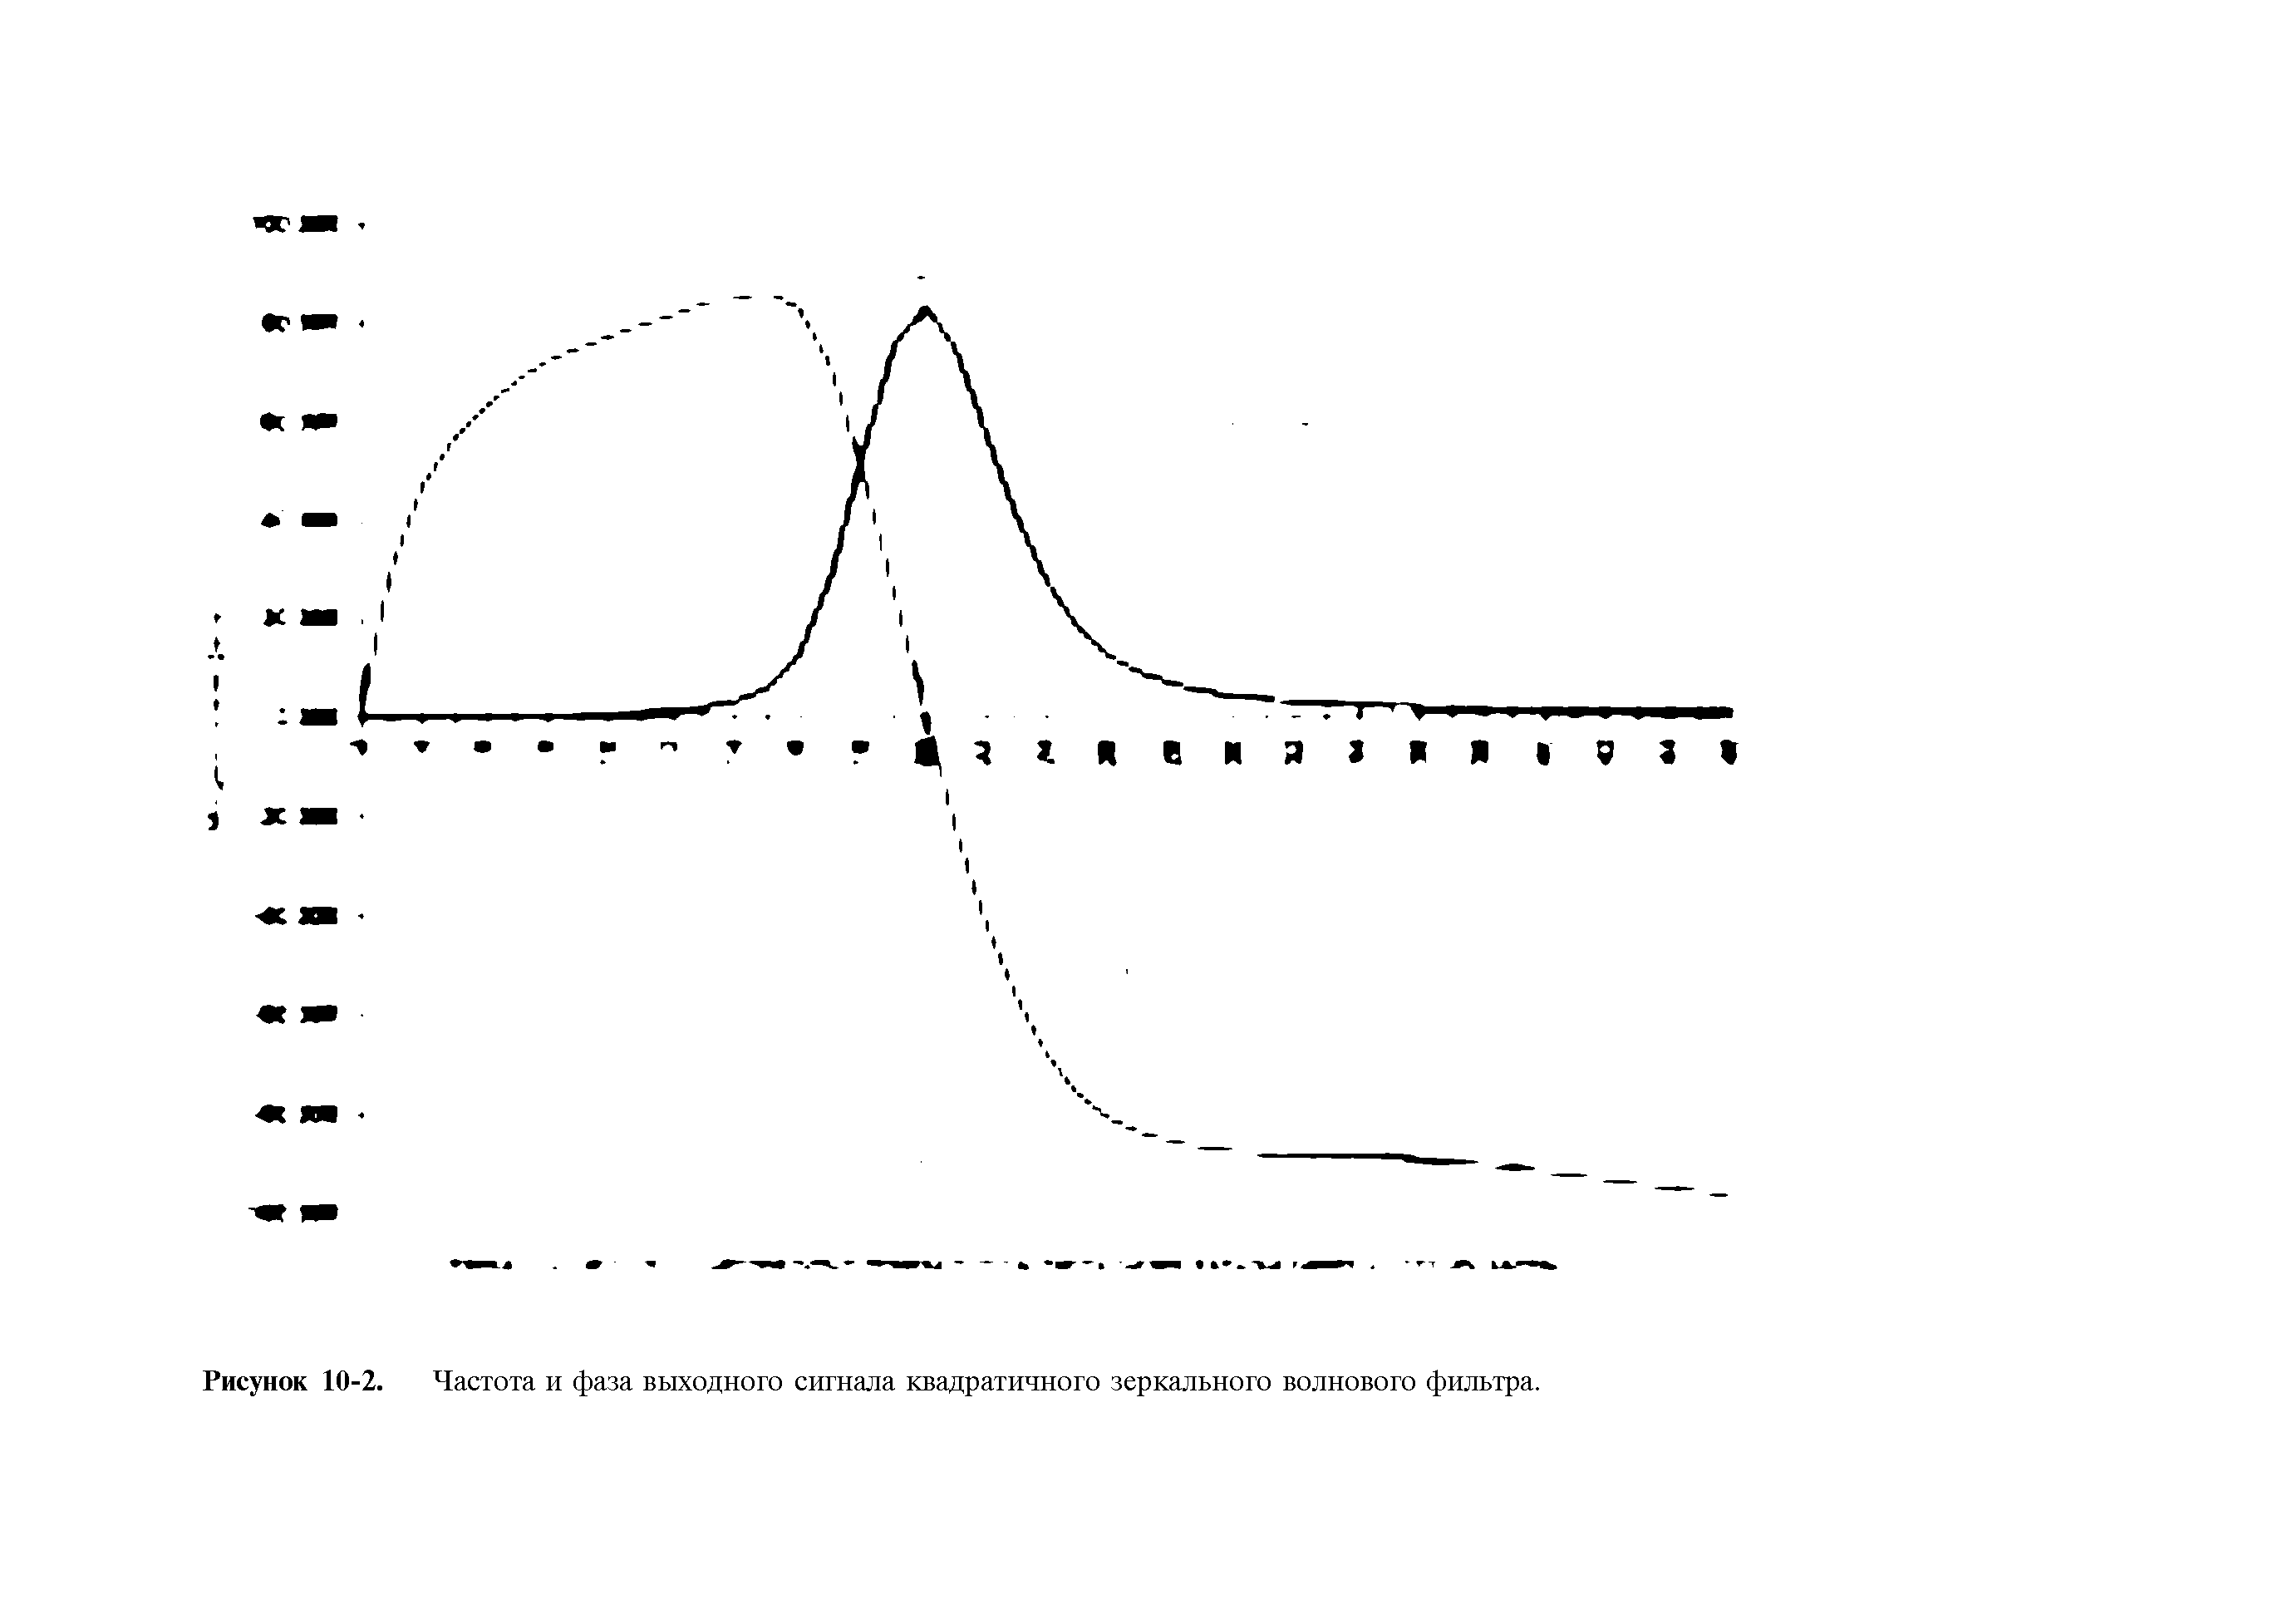 Рисунок 10-2. Частота и фаза выходного сигнала квадратичного зеркального волнового фильтра.
